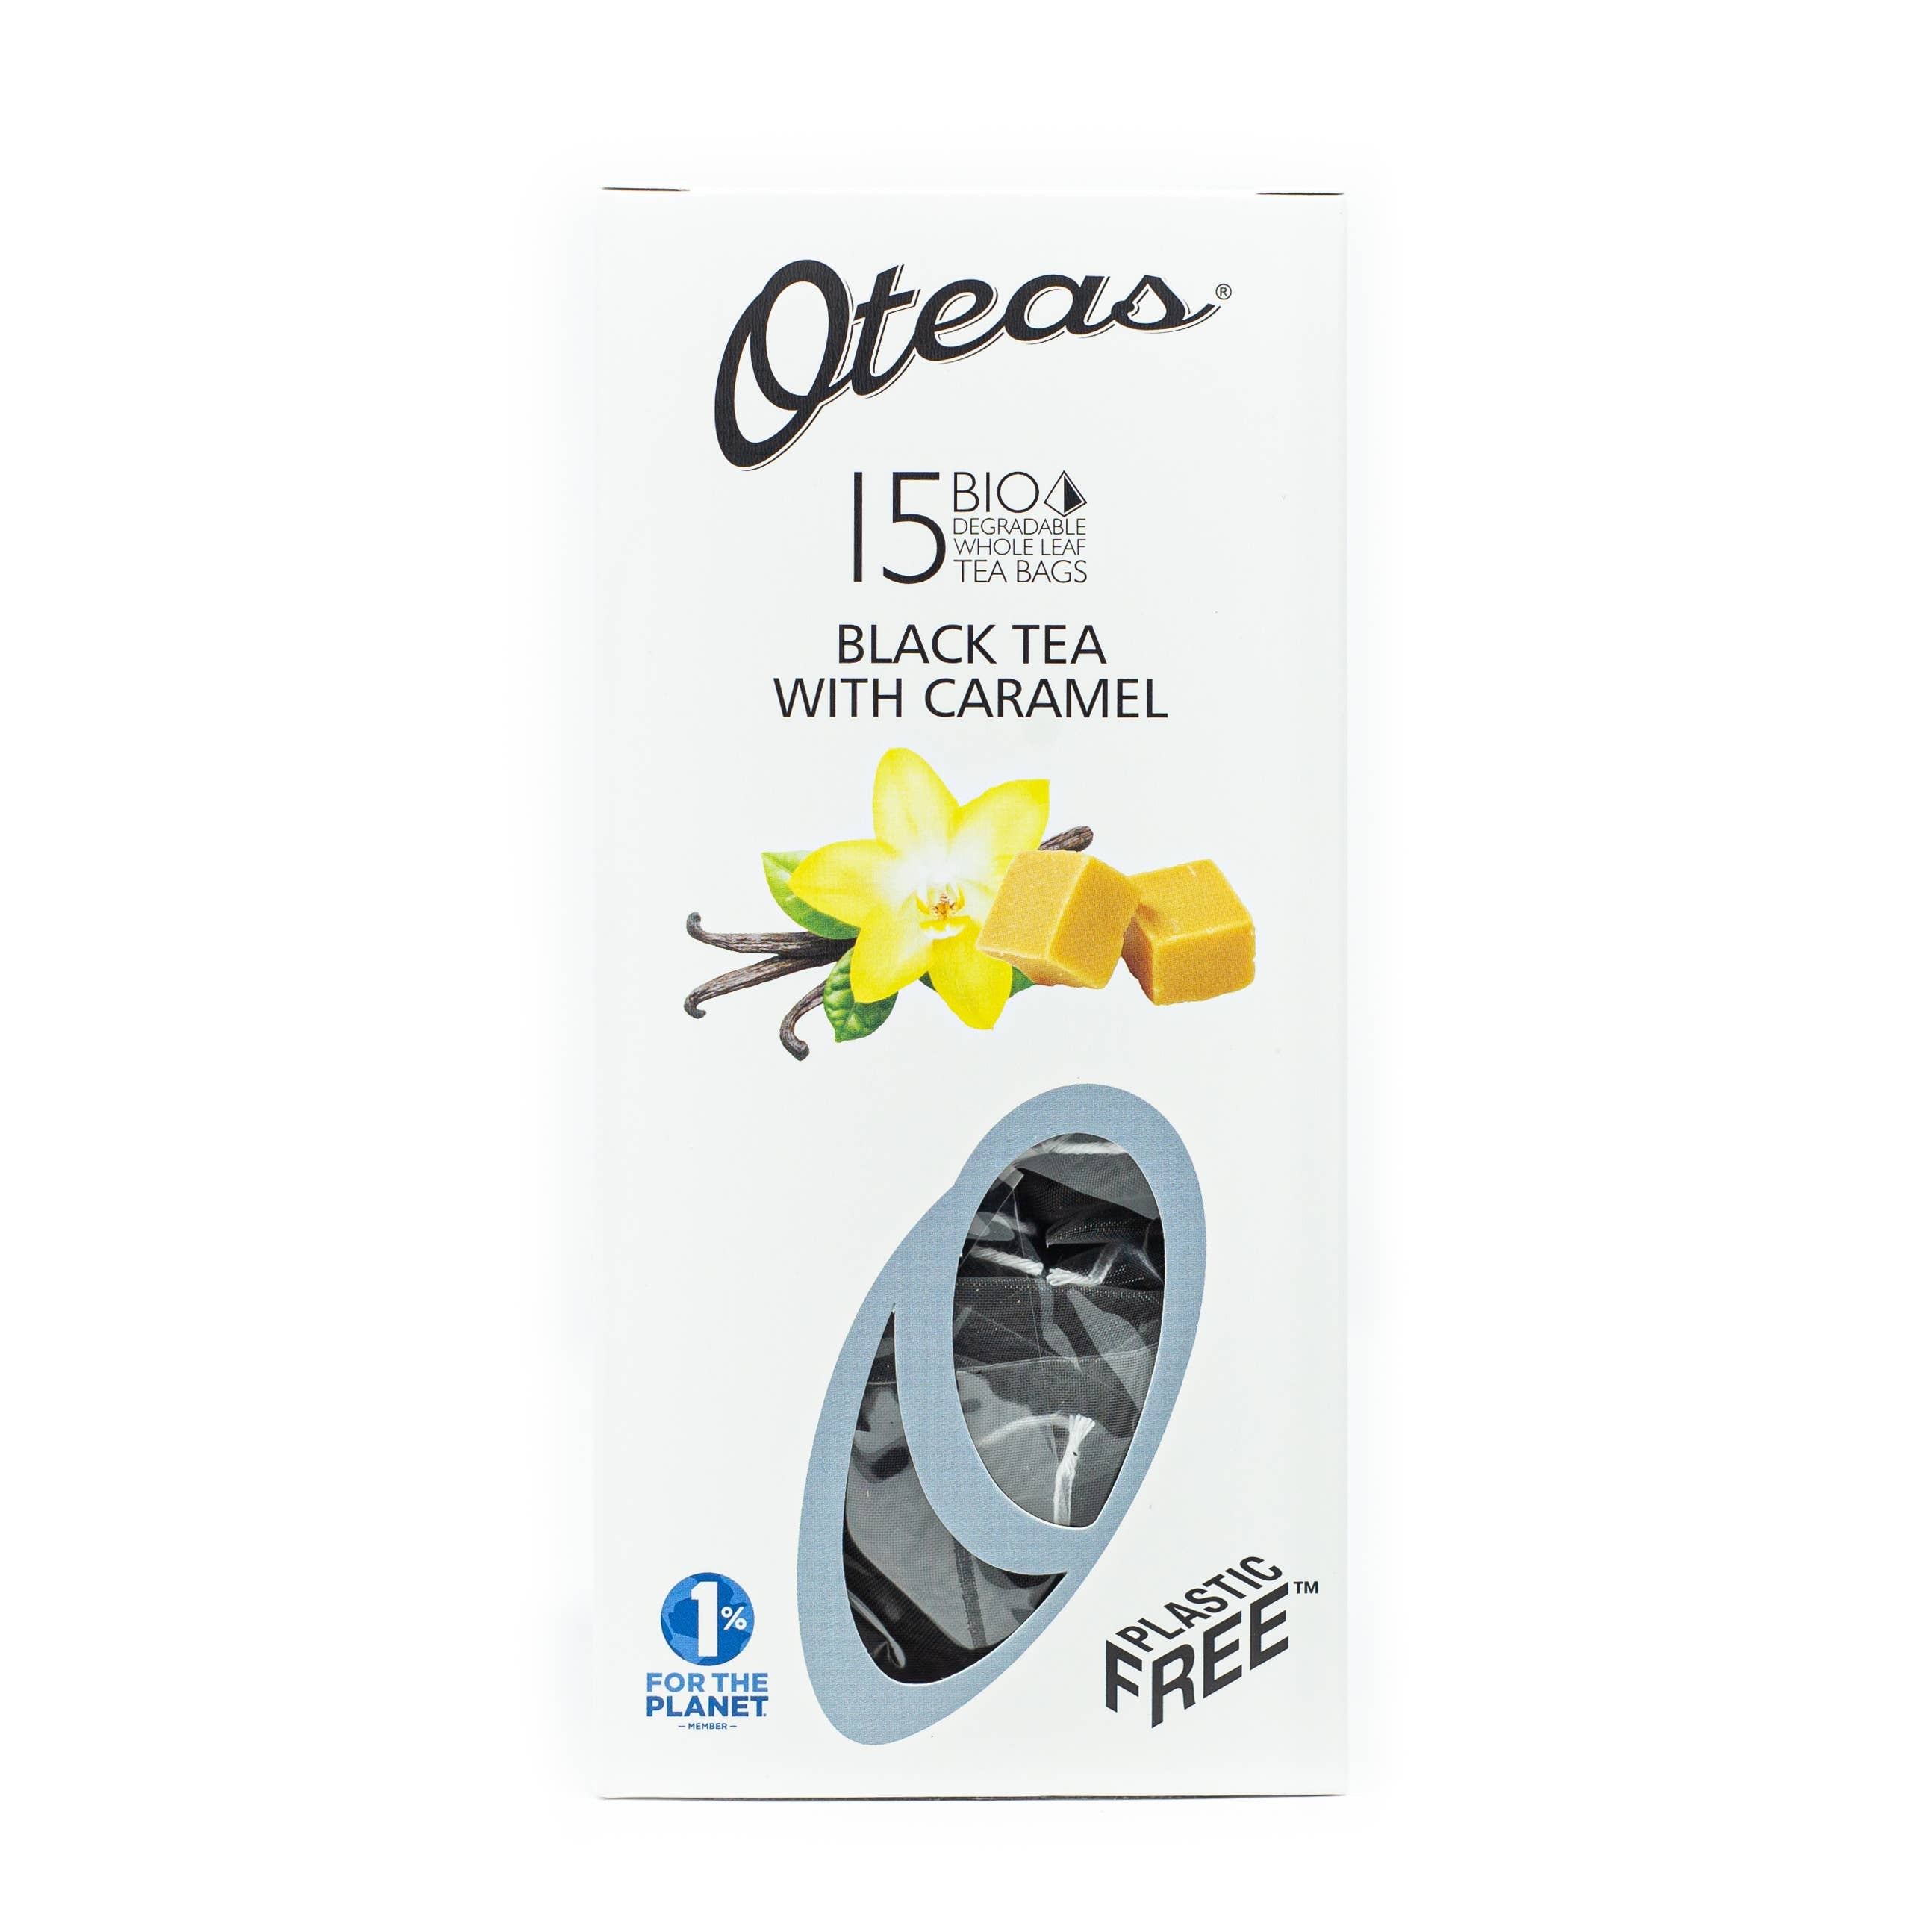 Oteas - Black Tea with Caramel